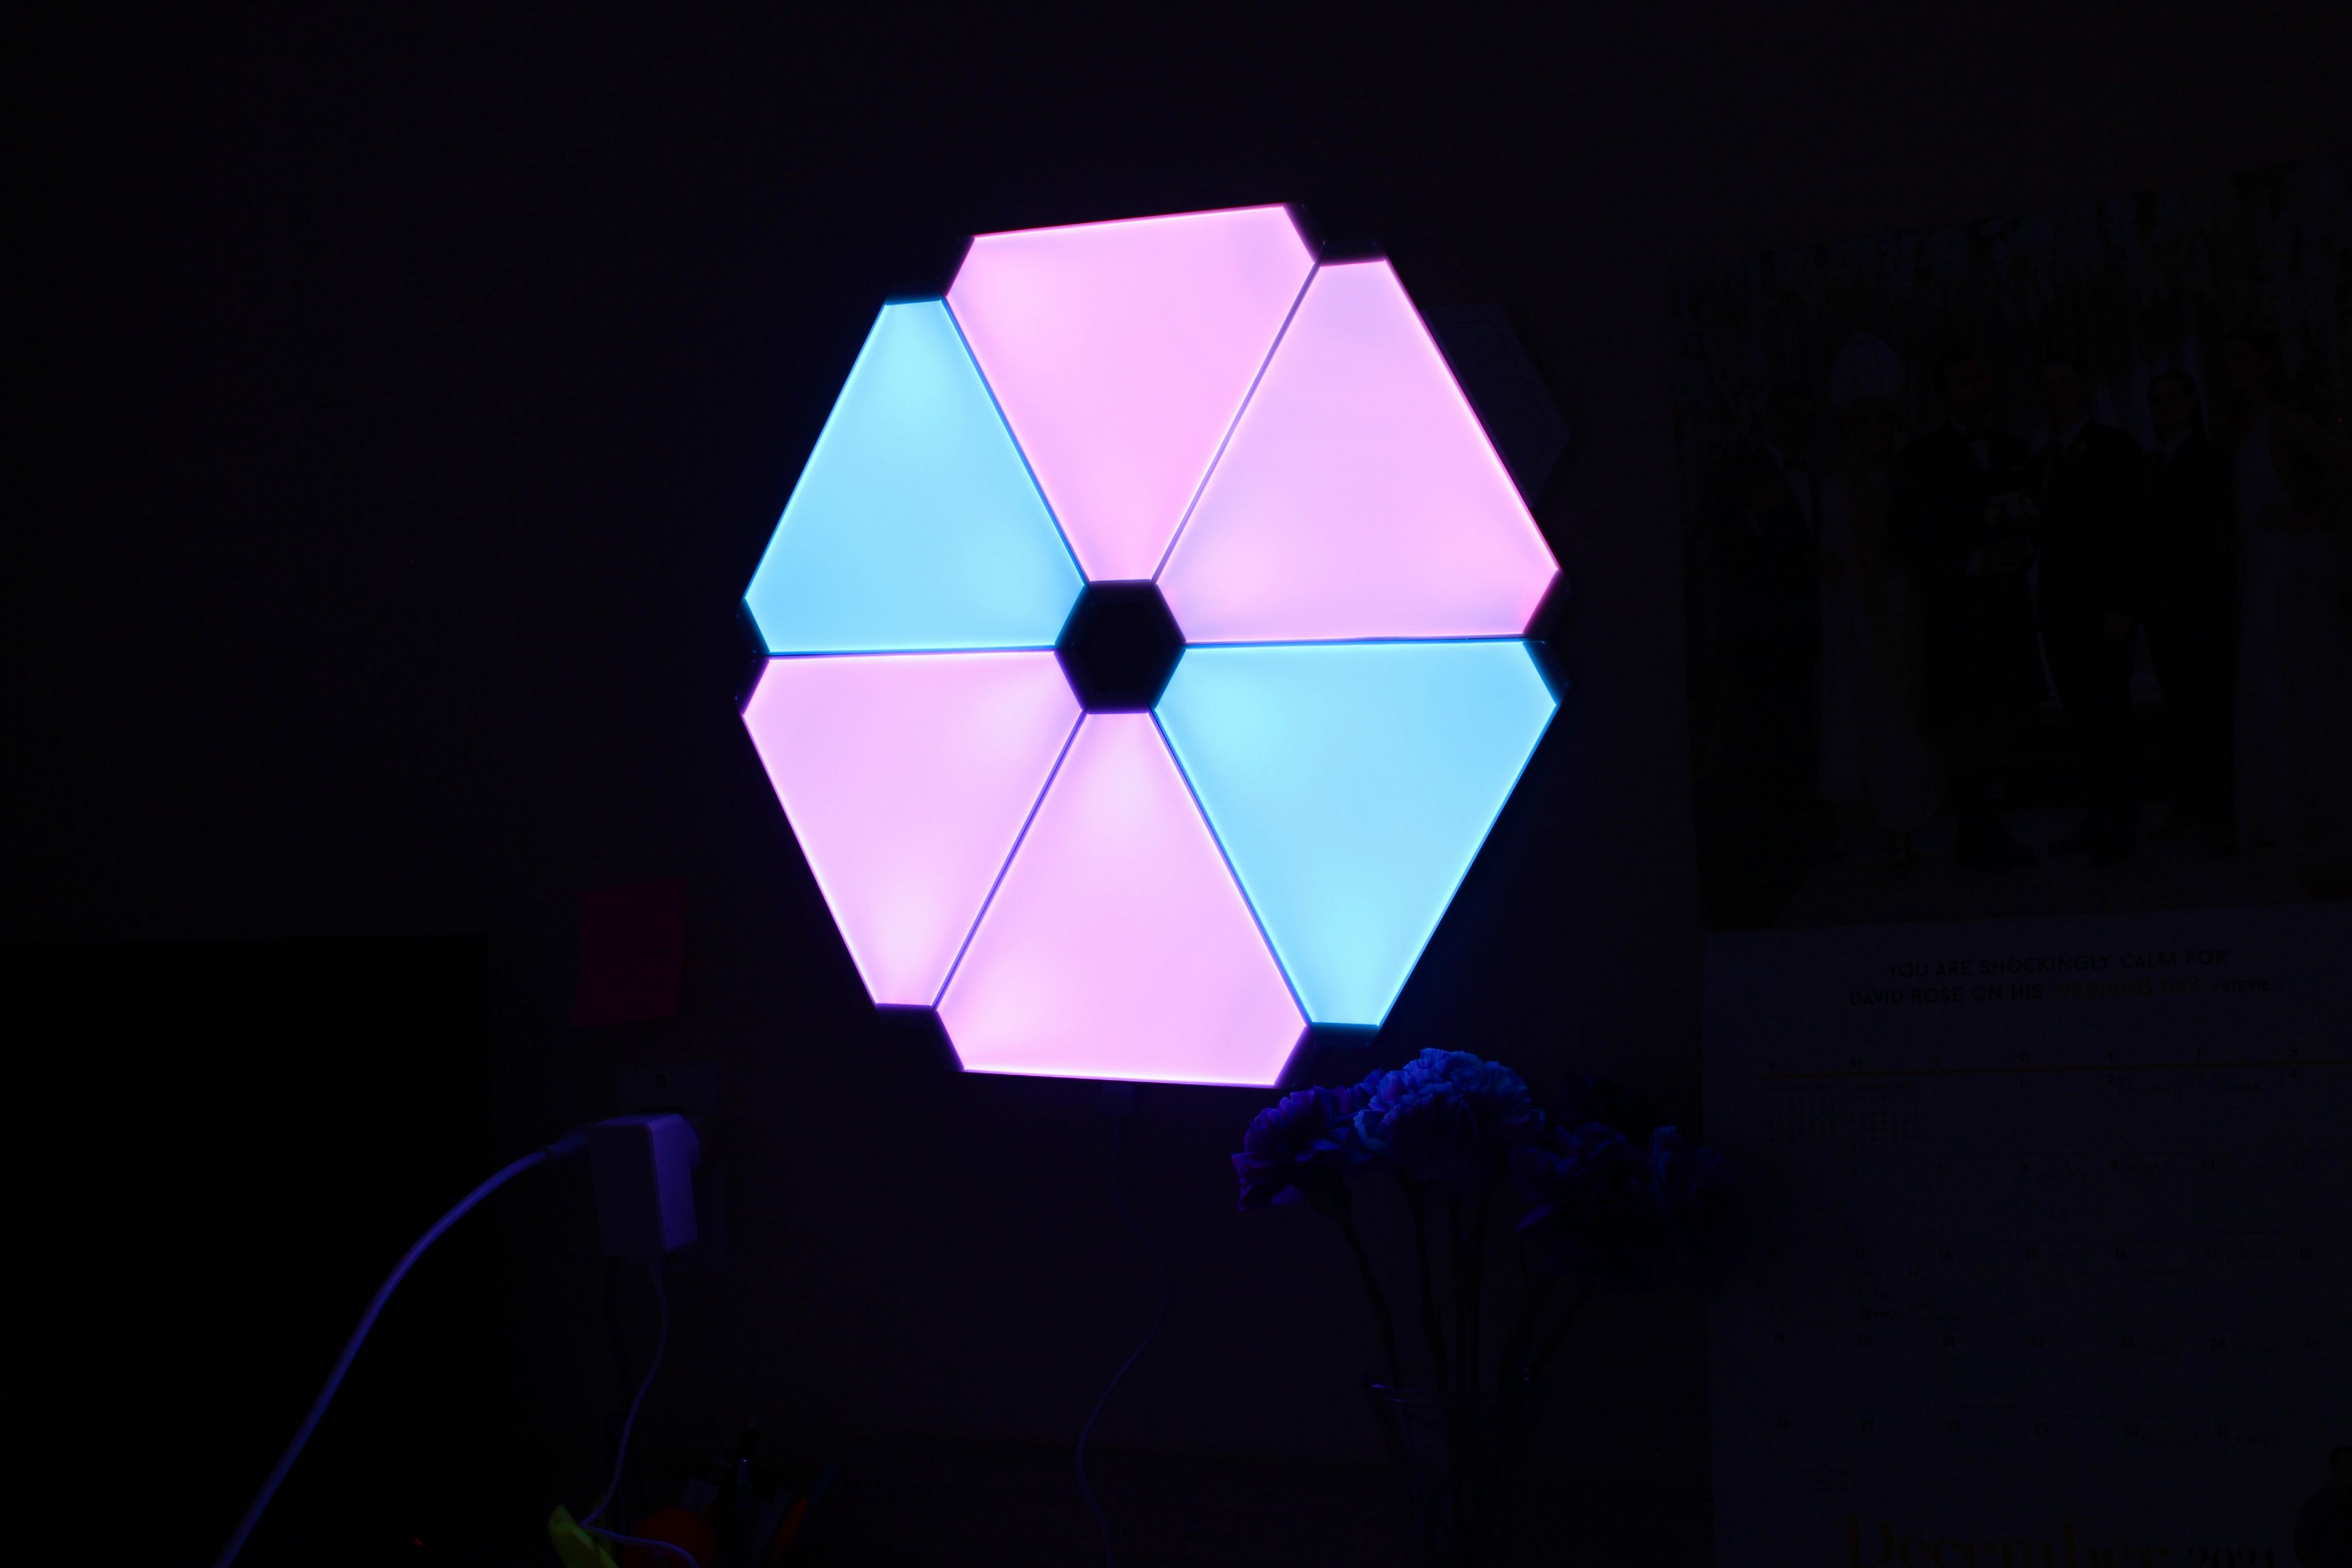 yeelight-smart-light-panels-pinkblue